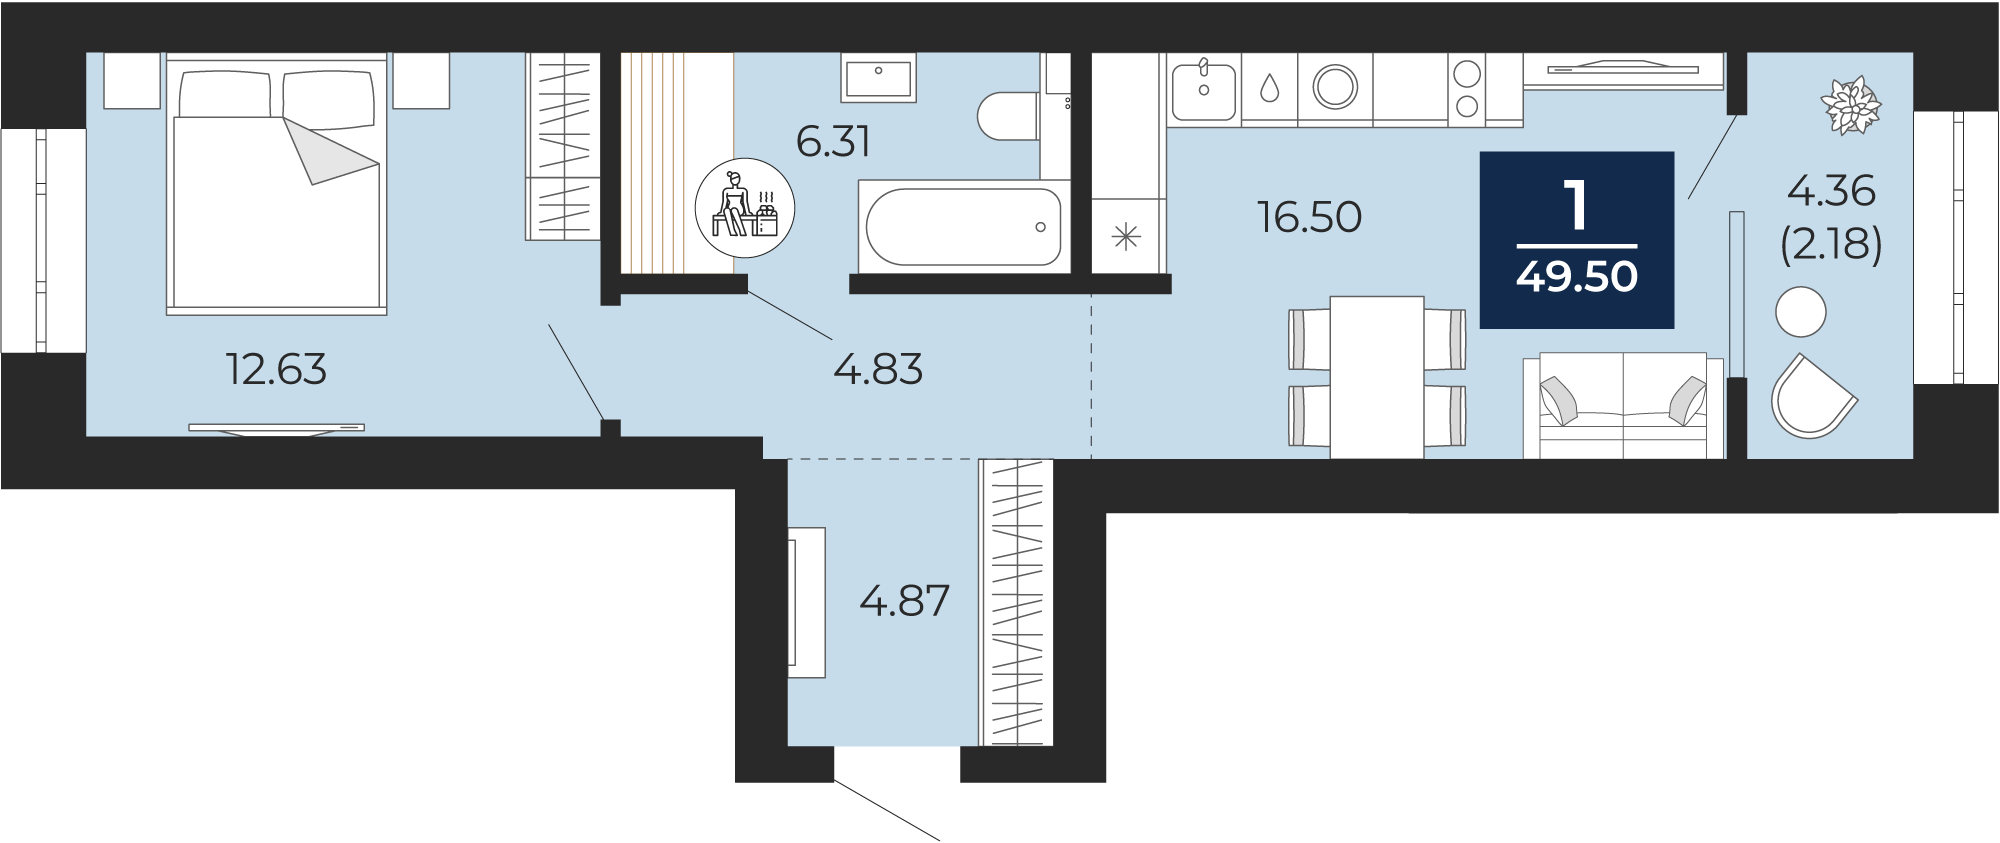 Квартира № 151, 1-комнатная, 49.5 кв. м, 5 этаж